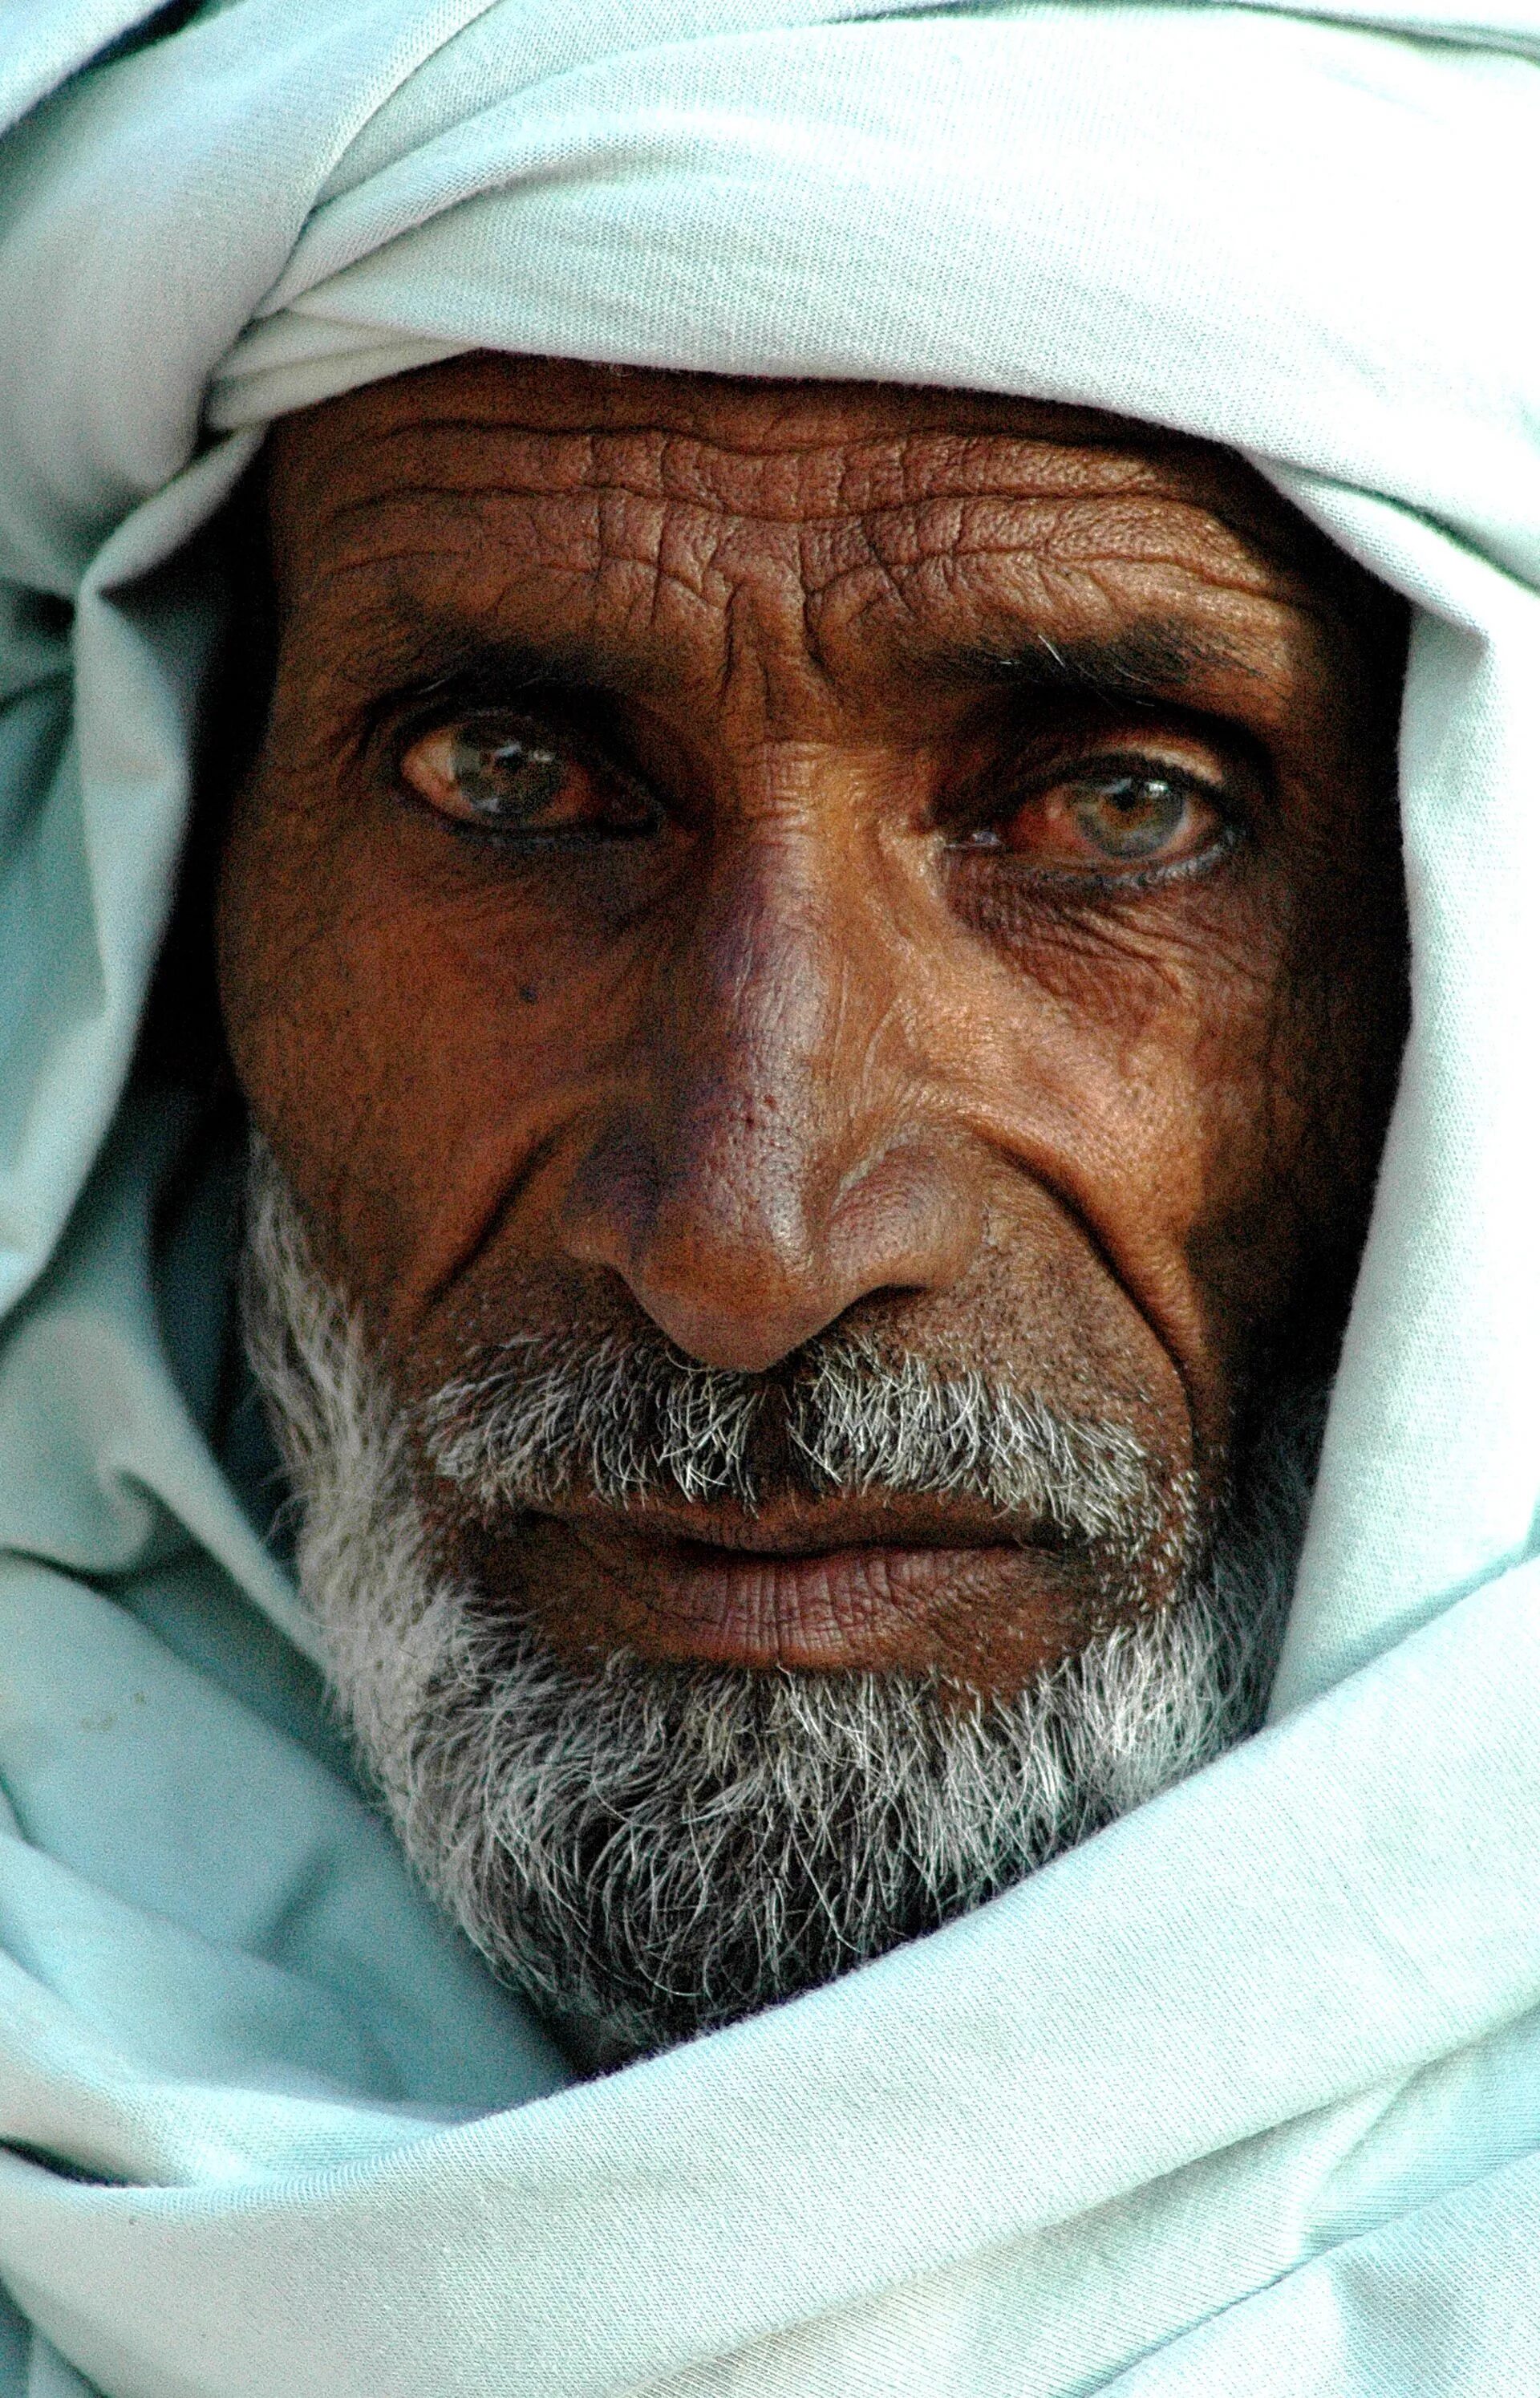 Дедушка араб. Старый араб. Лицо араба. Арабский старик. Пожилой араб.